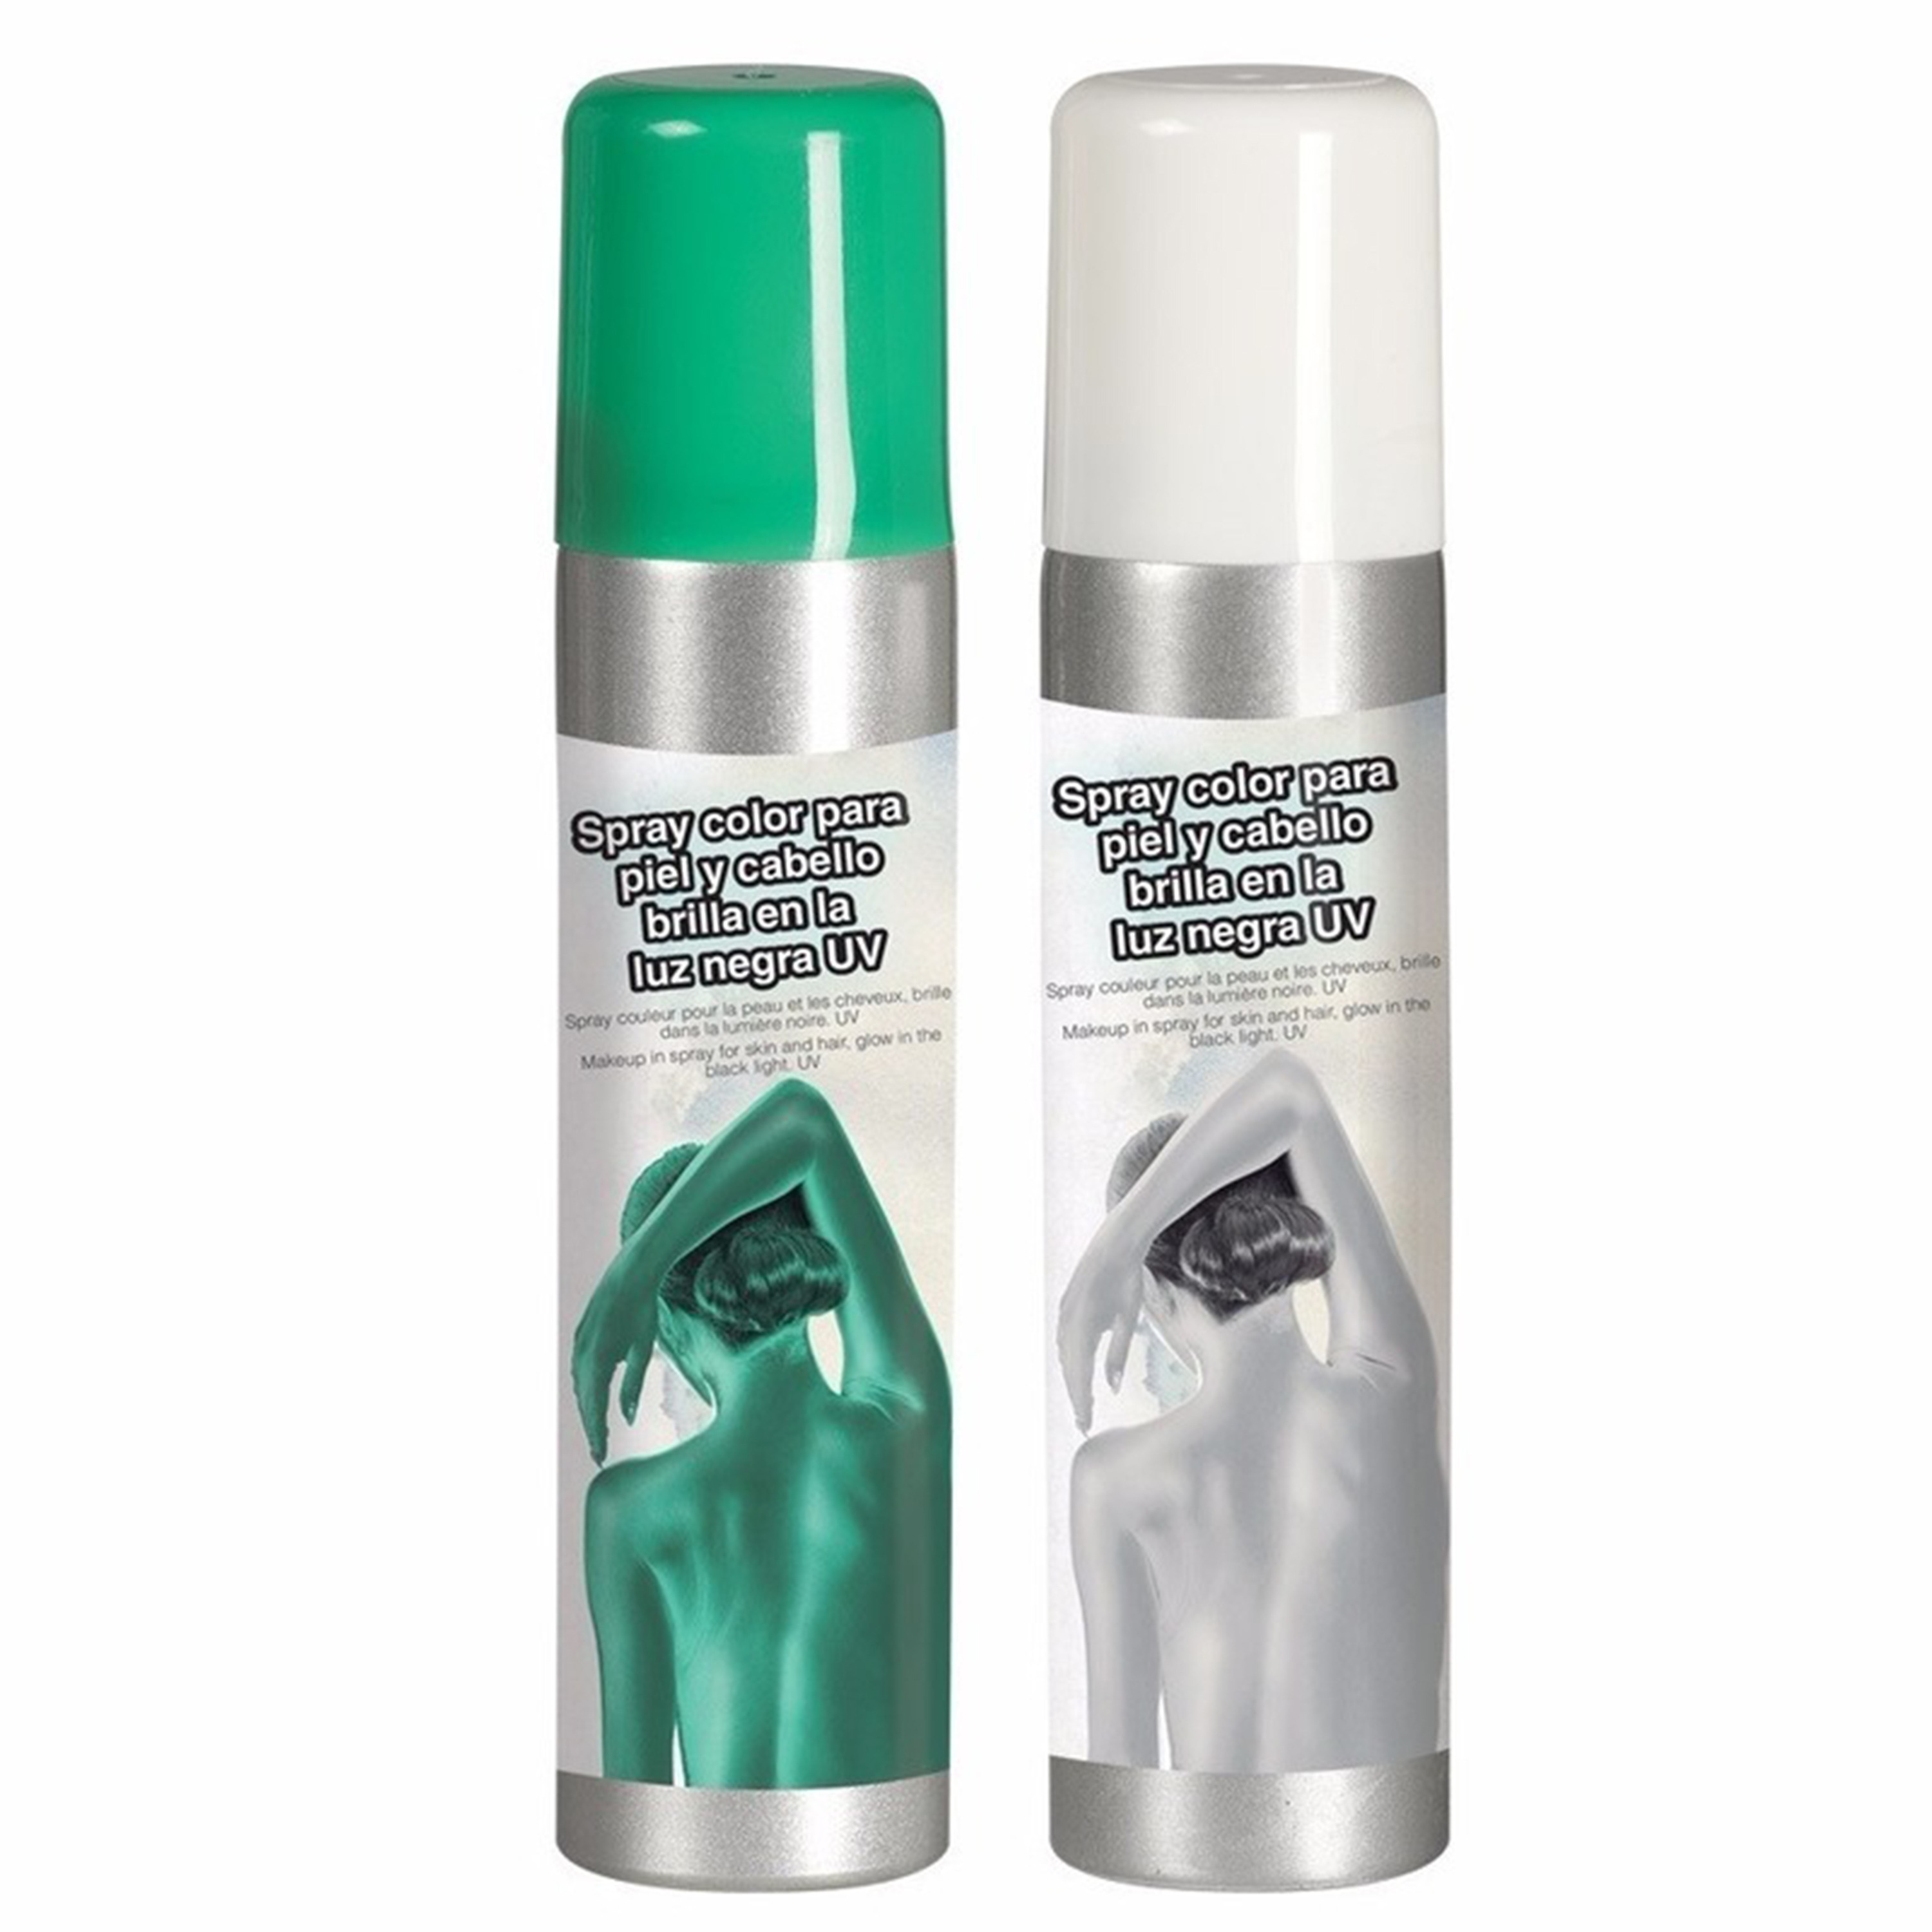 Guirca Haarspray-bodypaint spray 2x kleuren wit en groen 75 ml